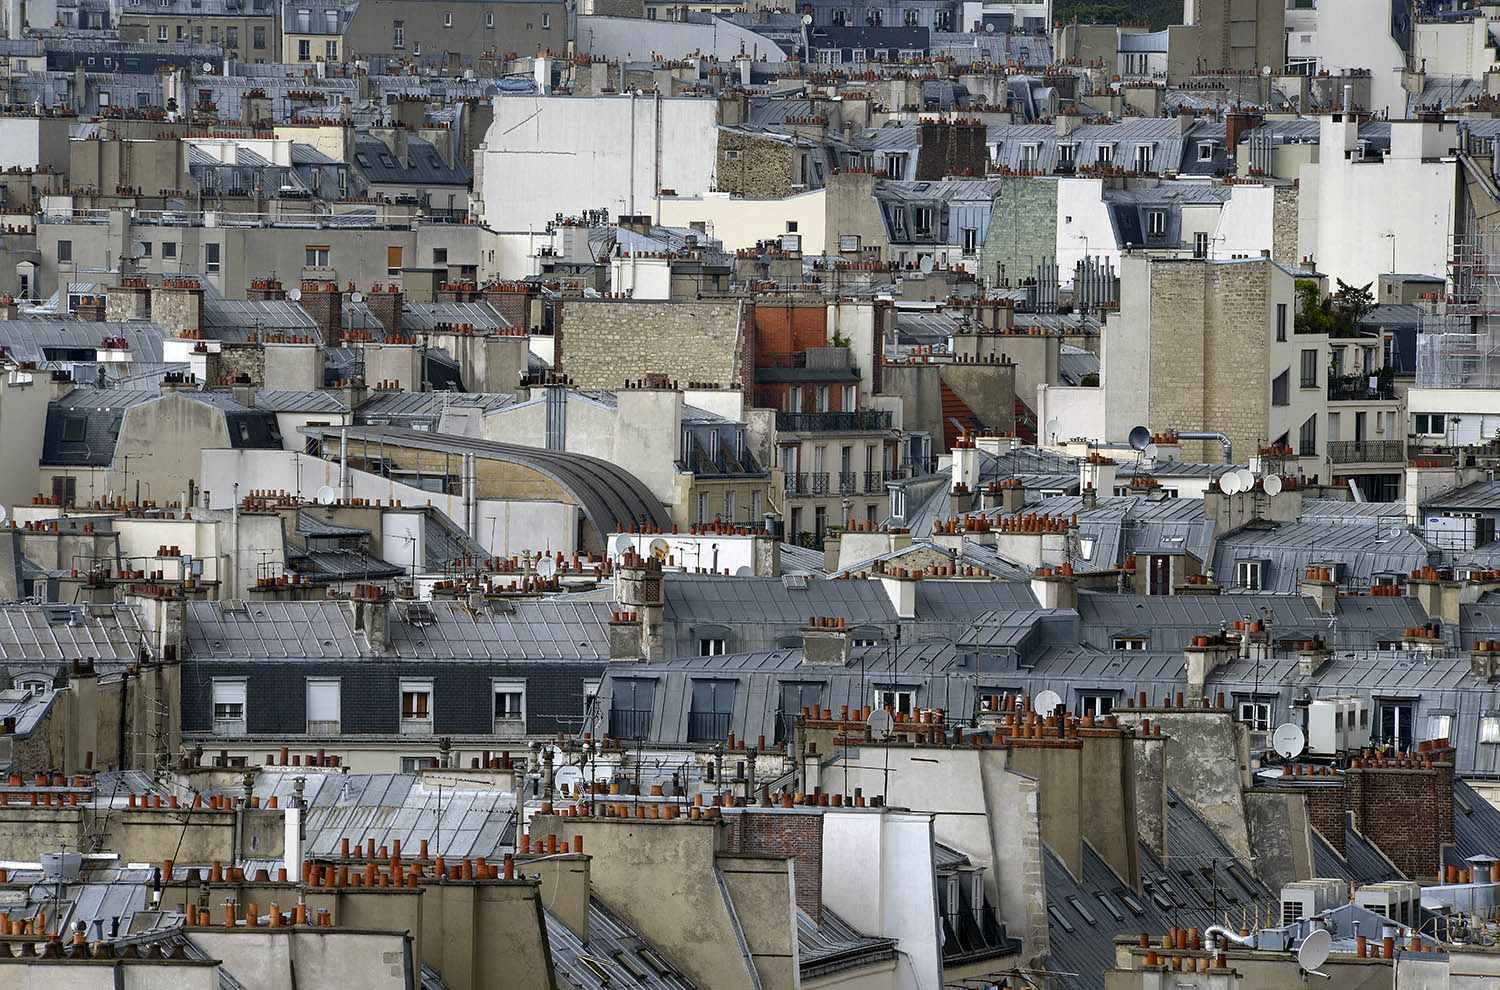 Párizs kéményei - Michael Wolf fotói